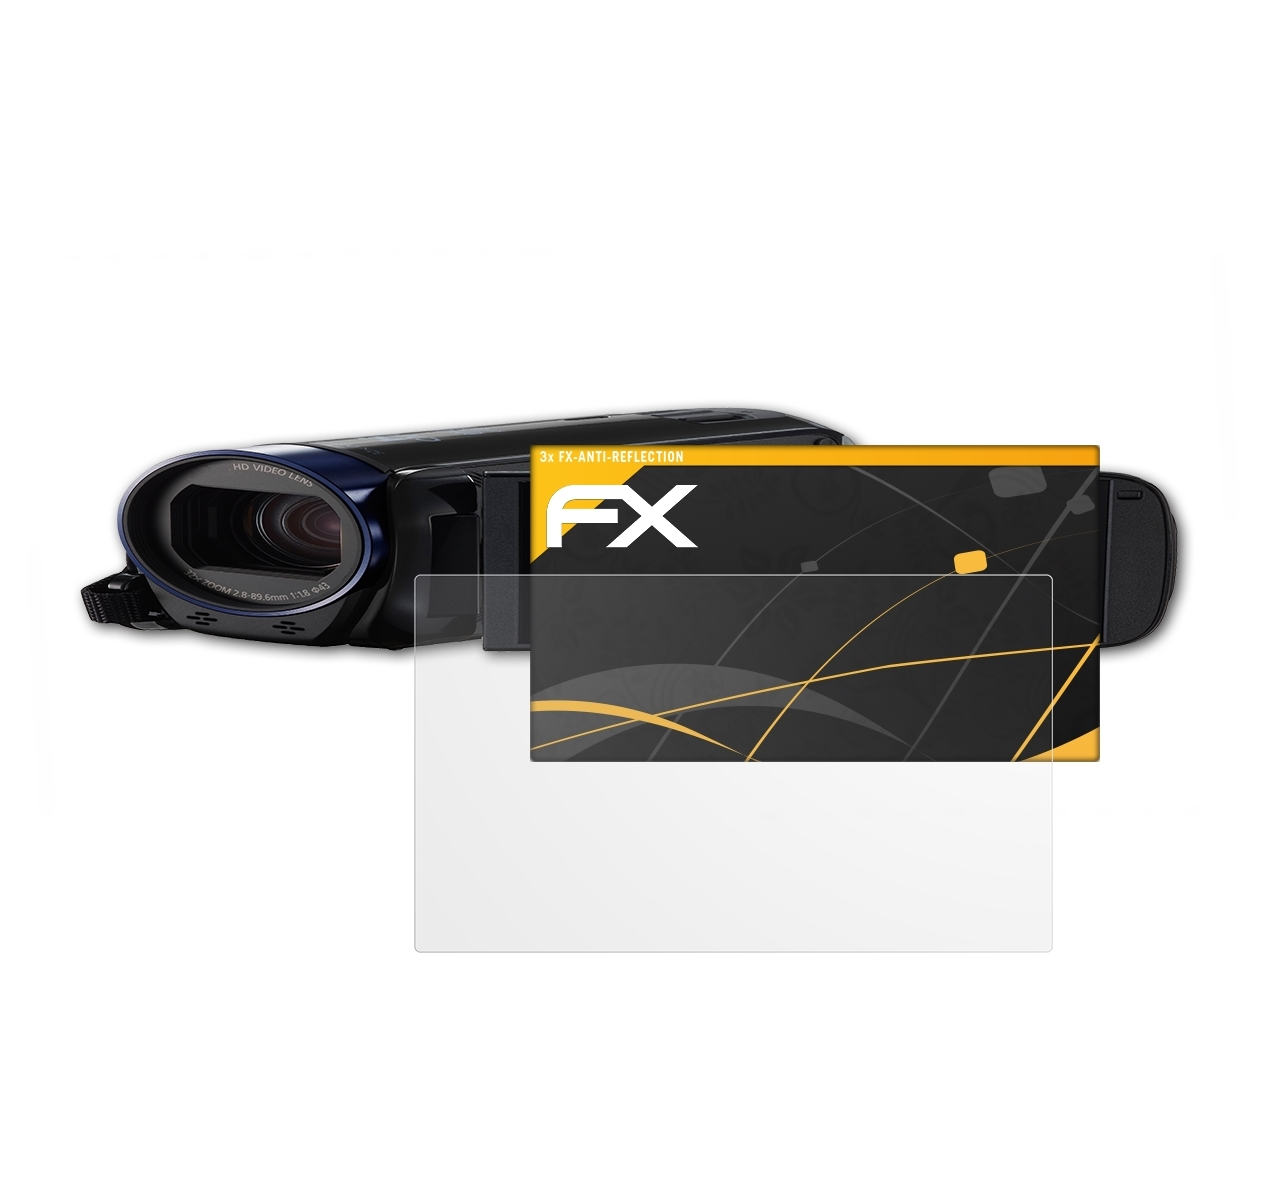 ATFOLIX 3x FX-Antireflex Displayschutz(für Canon HF R606) Legria